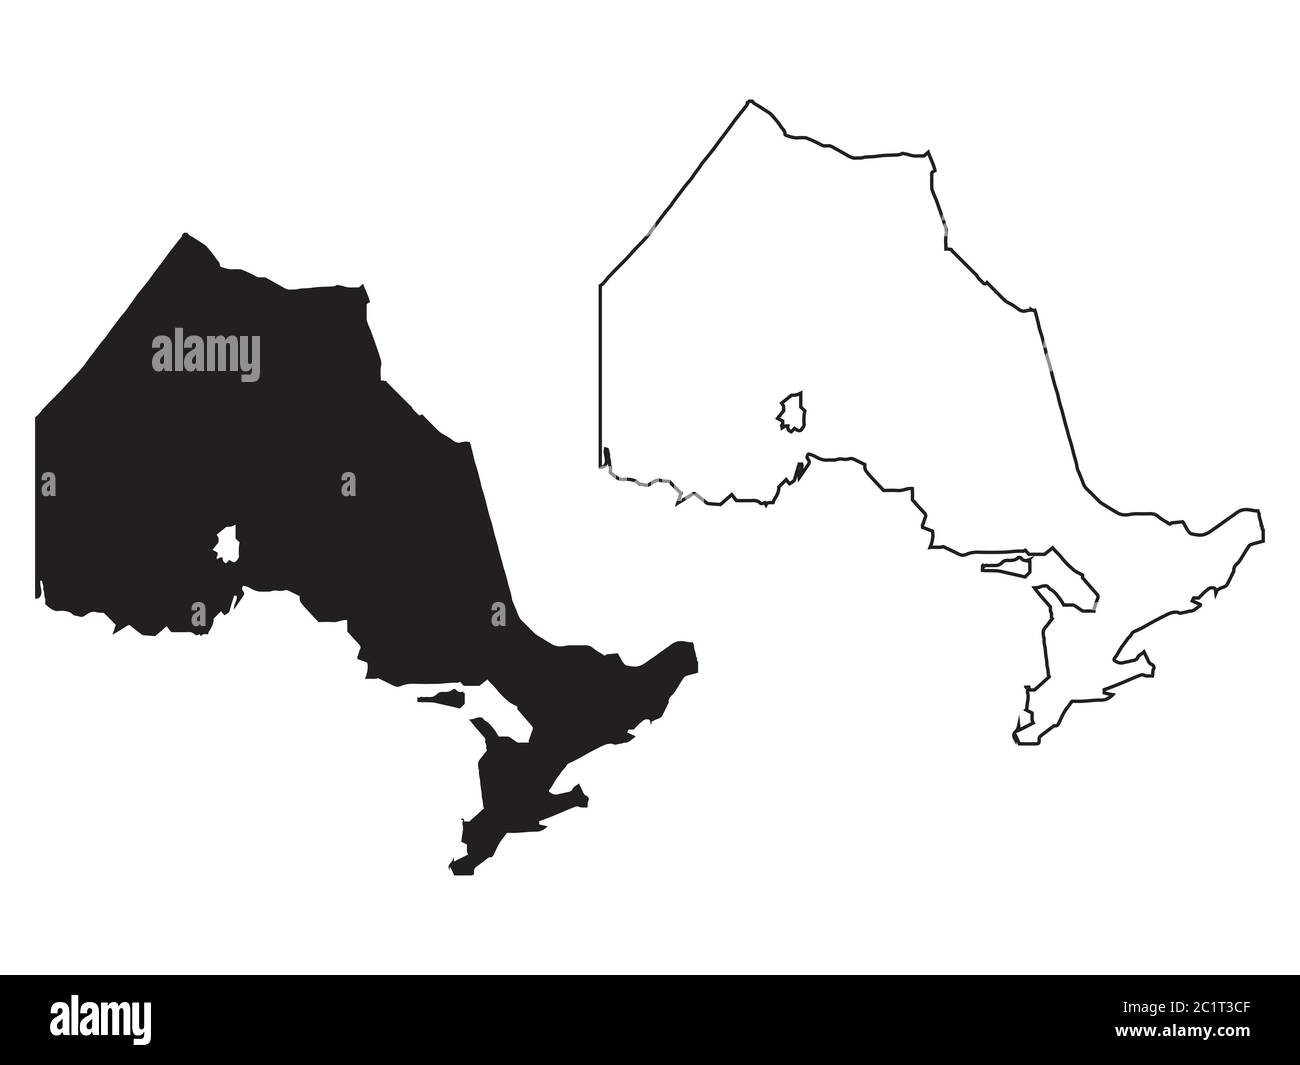 Provincia e territorio dell'Ontario del Canada. Illustrazione e contorno neri. Isolato su sfondo bianco. Vettore EPS Illustrazione Vettoriale